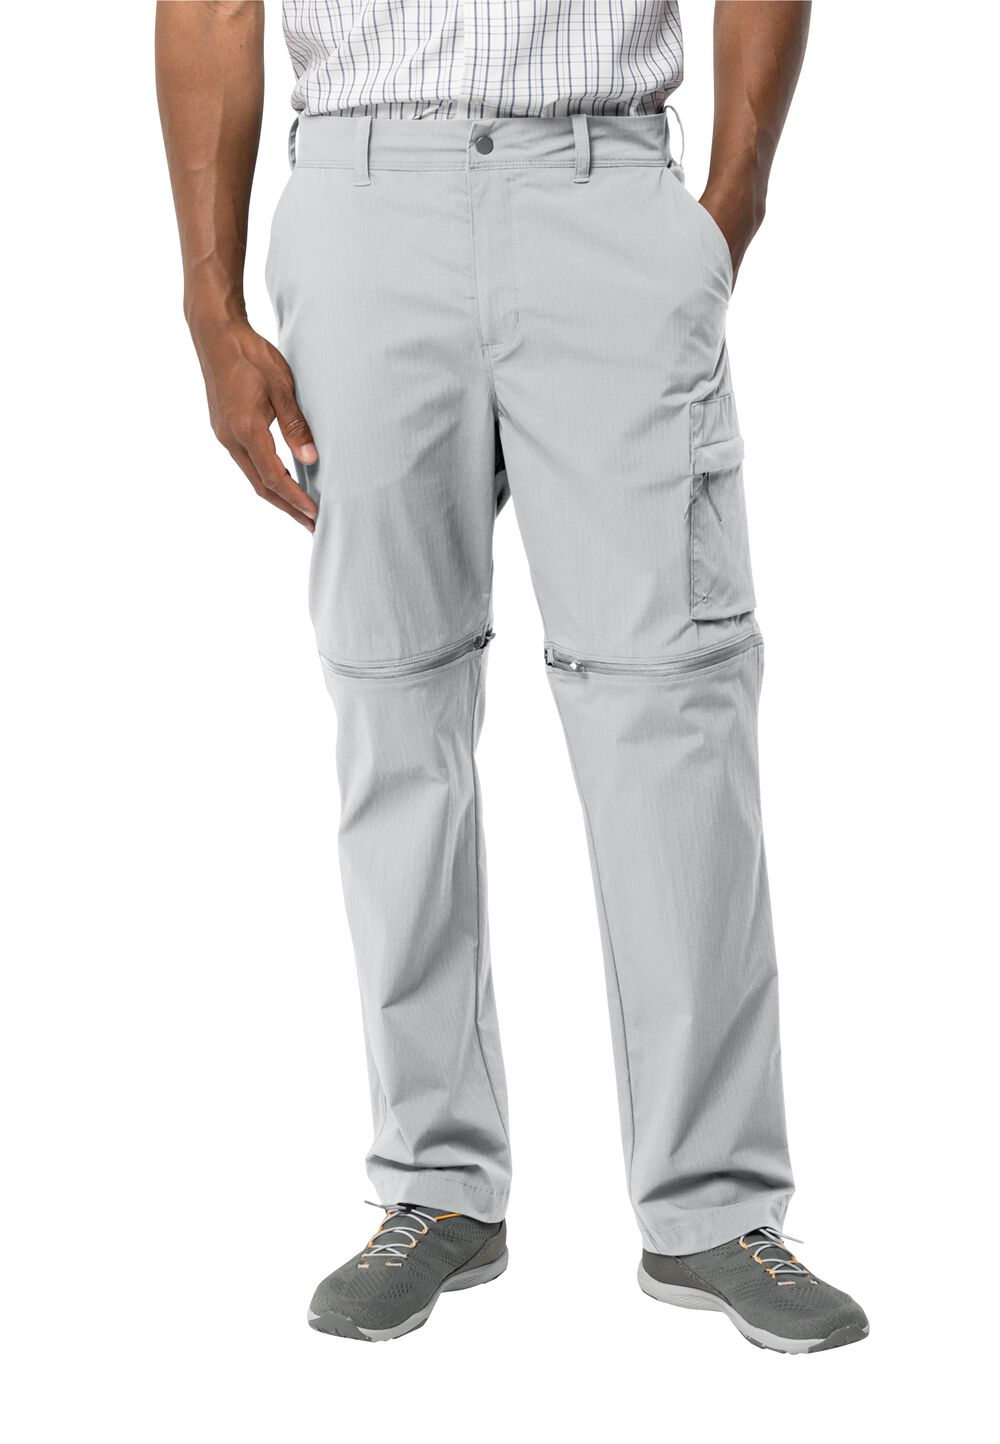 Jack Wolfskin Wanderthirst Zip Pants Men Zip-Off-broek Heren 46L grijs cool grey